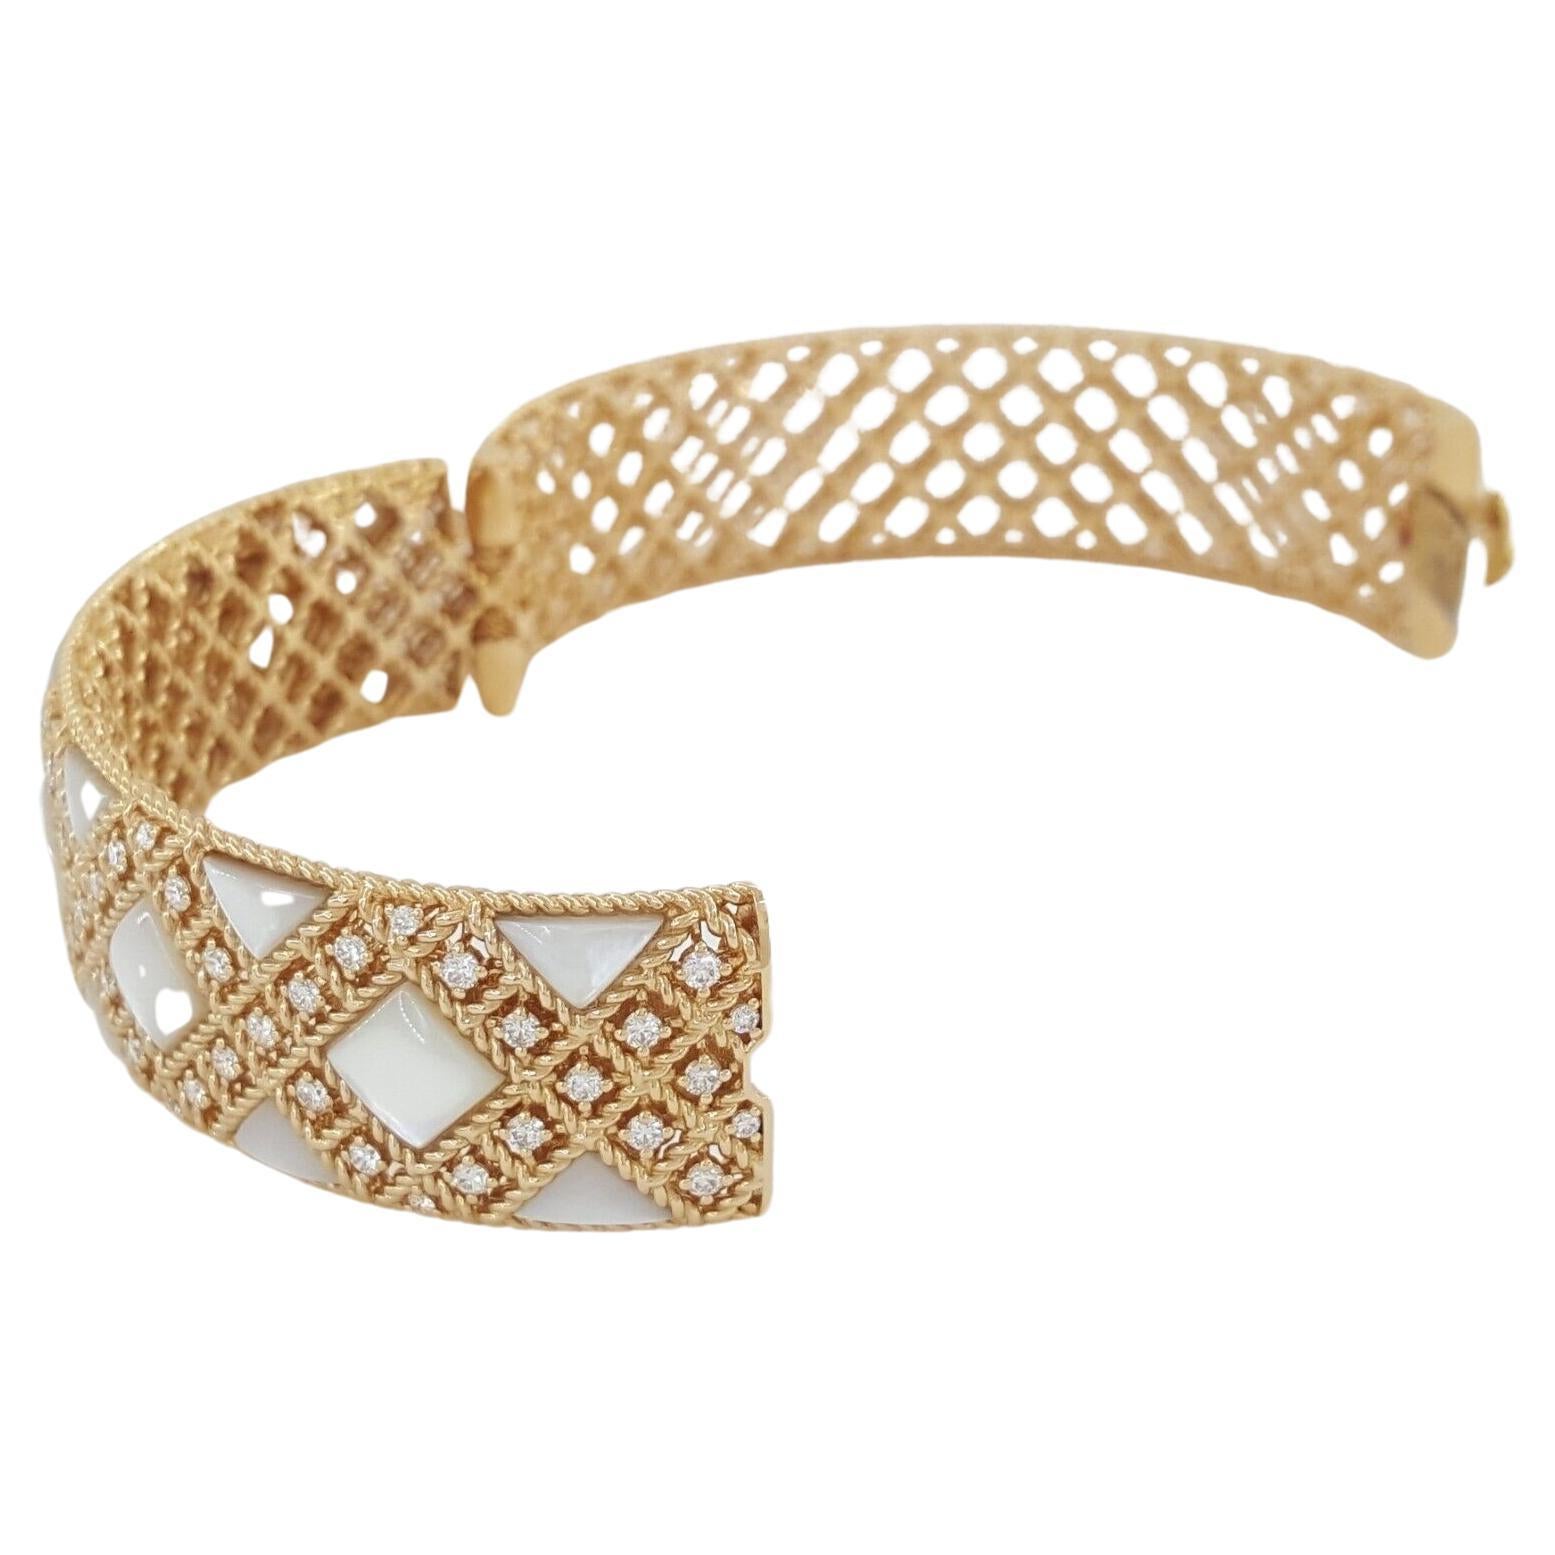 Roberto Coin Palazzo Ducale MoP 1,24 ct Diamant 18K Rose Gold Armreif Armband. 

Das Armband wiegt 43,9 Gramm, 6,25 Zoll (kleine Größe, passt an ein kleines bis mittleres Handgelenk), enthält 67 natürliche Diamanten im Brillantschliff mit einem